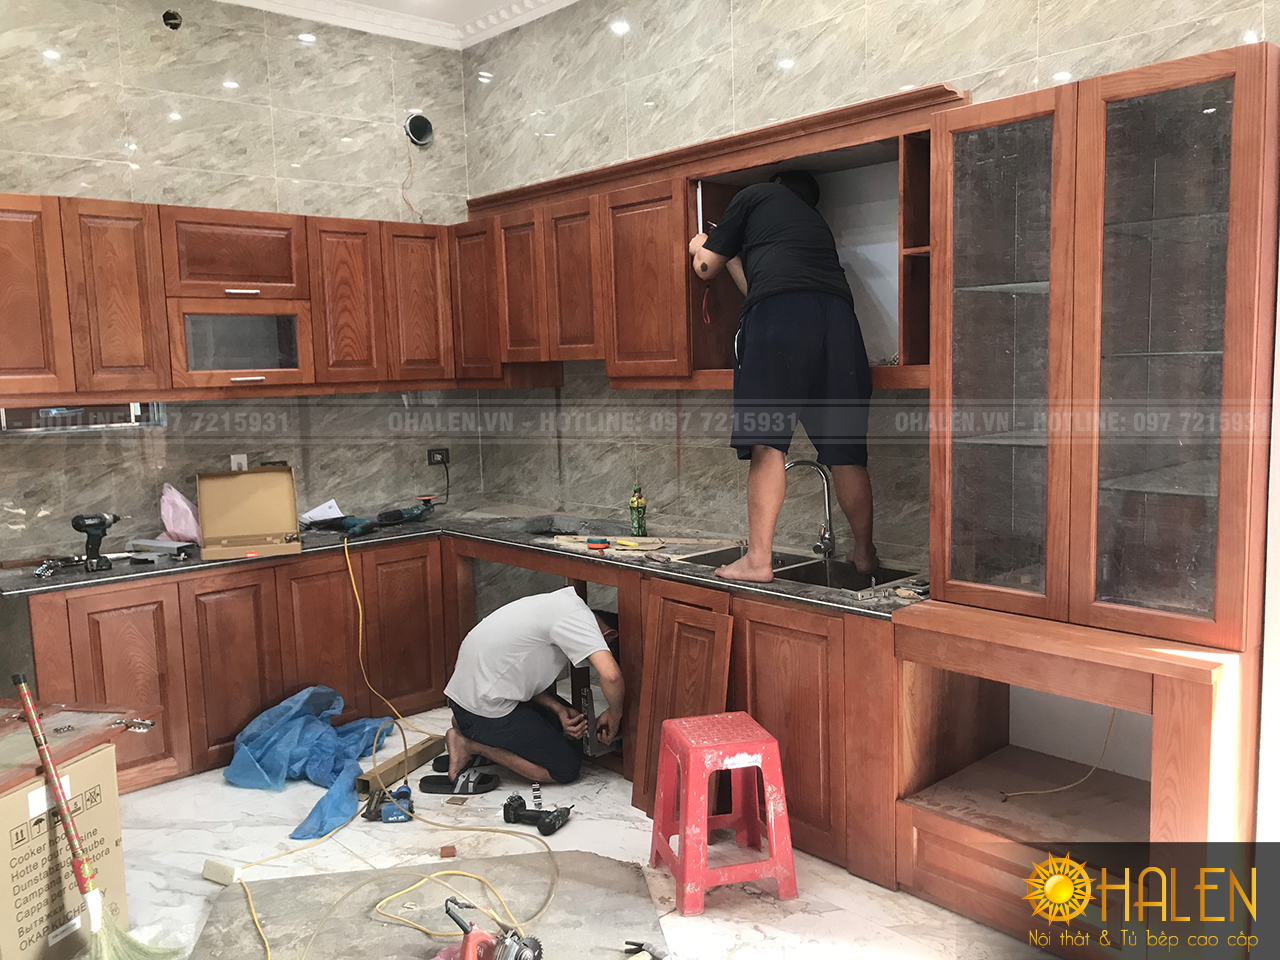 Đội ngũ thợ của OHALEN đang thi công tủ bếp ở Sóc Sơn - Hà Nội cho khách hàng